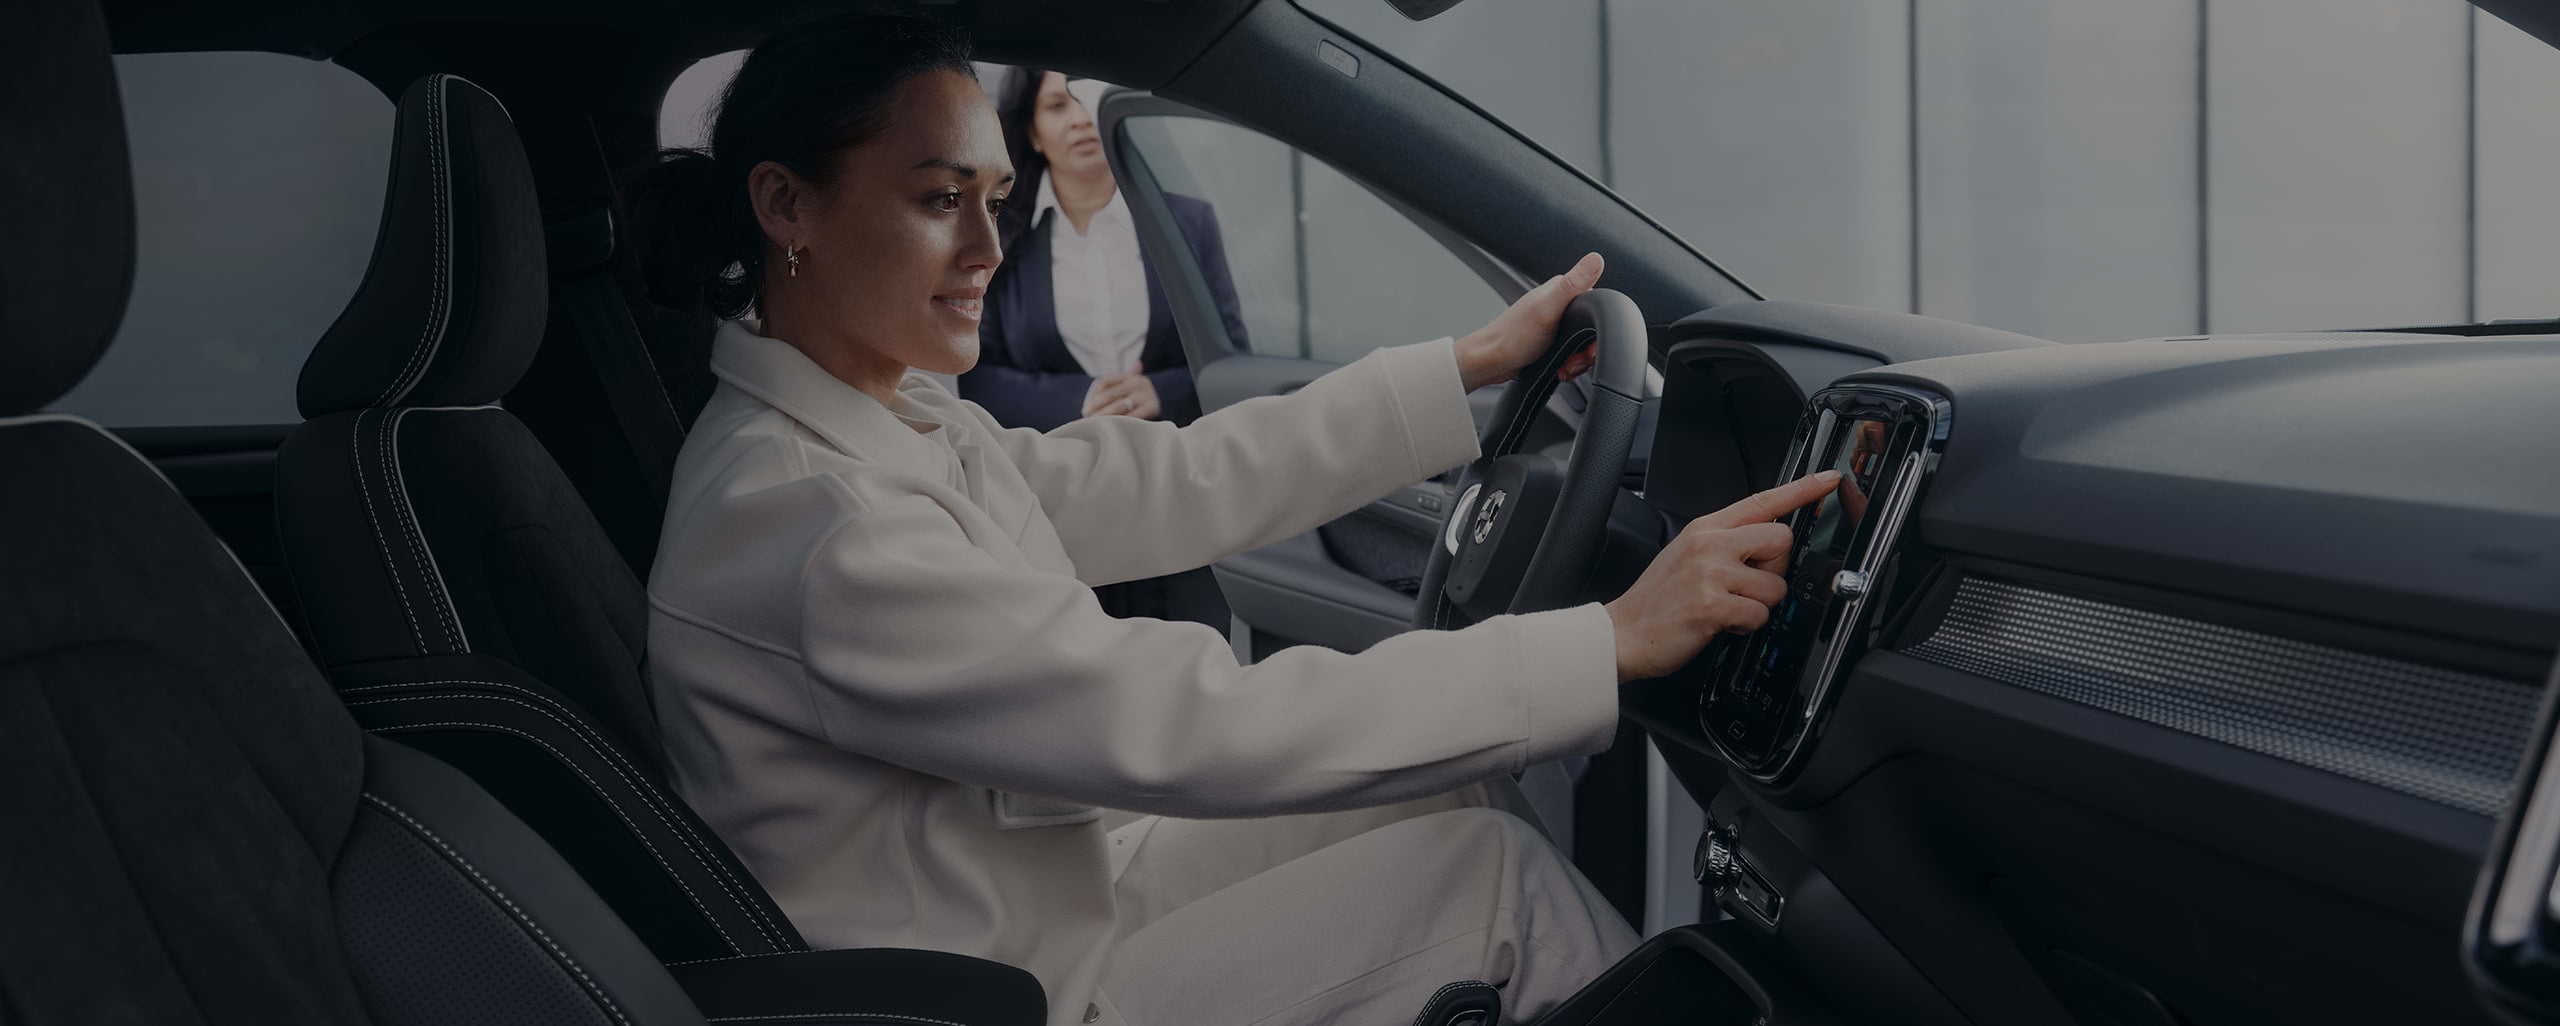 Eine Verkäuferin blickt auf eine junge Frau, die lächelnd auf dem Fahrersitz sitzt und die Mittelkonsole eines Volvo berührt.